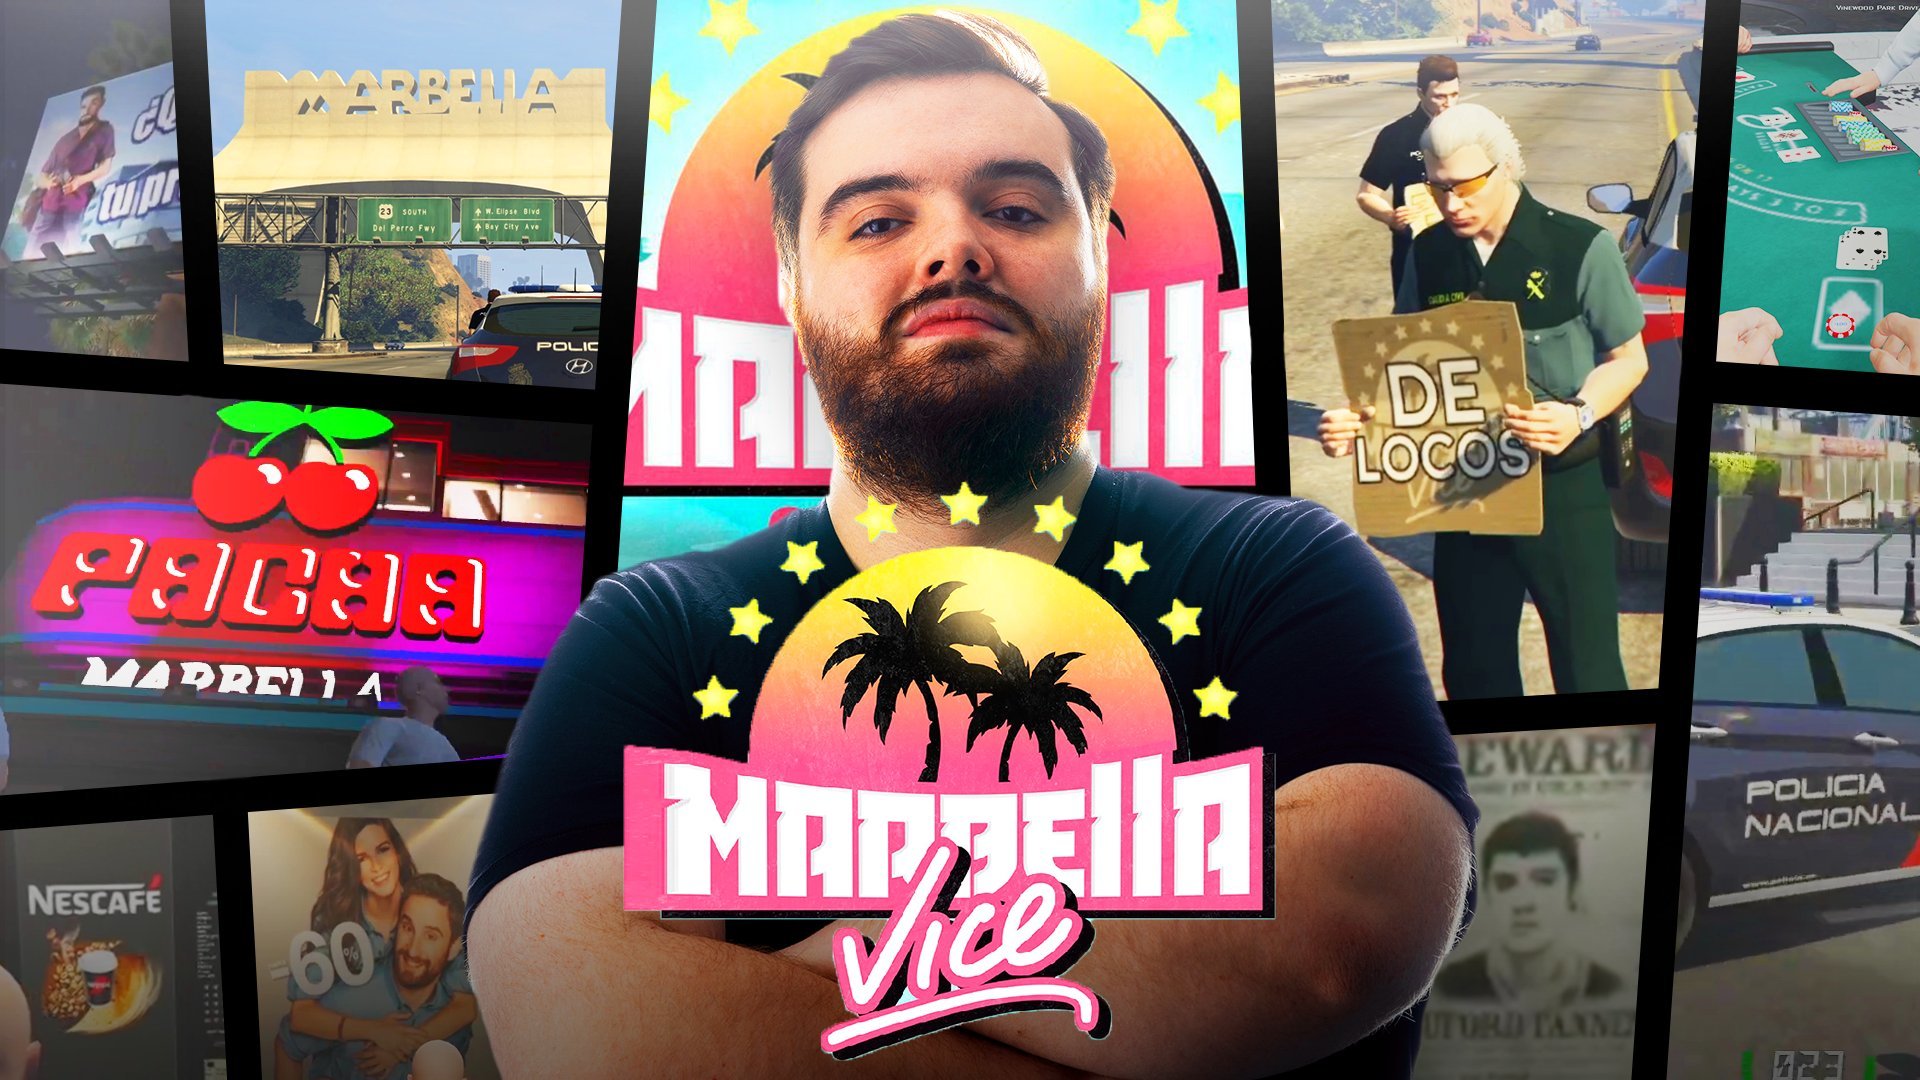 Marbella Vice arrasa en la noche del domingo con ms de un milln en Twitch